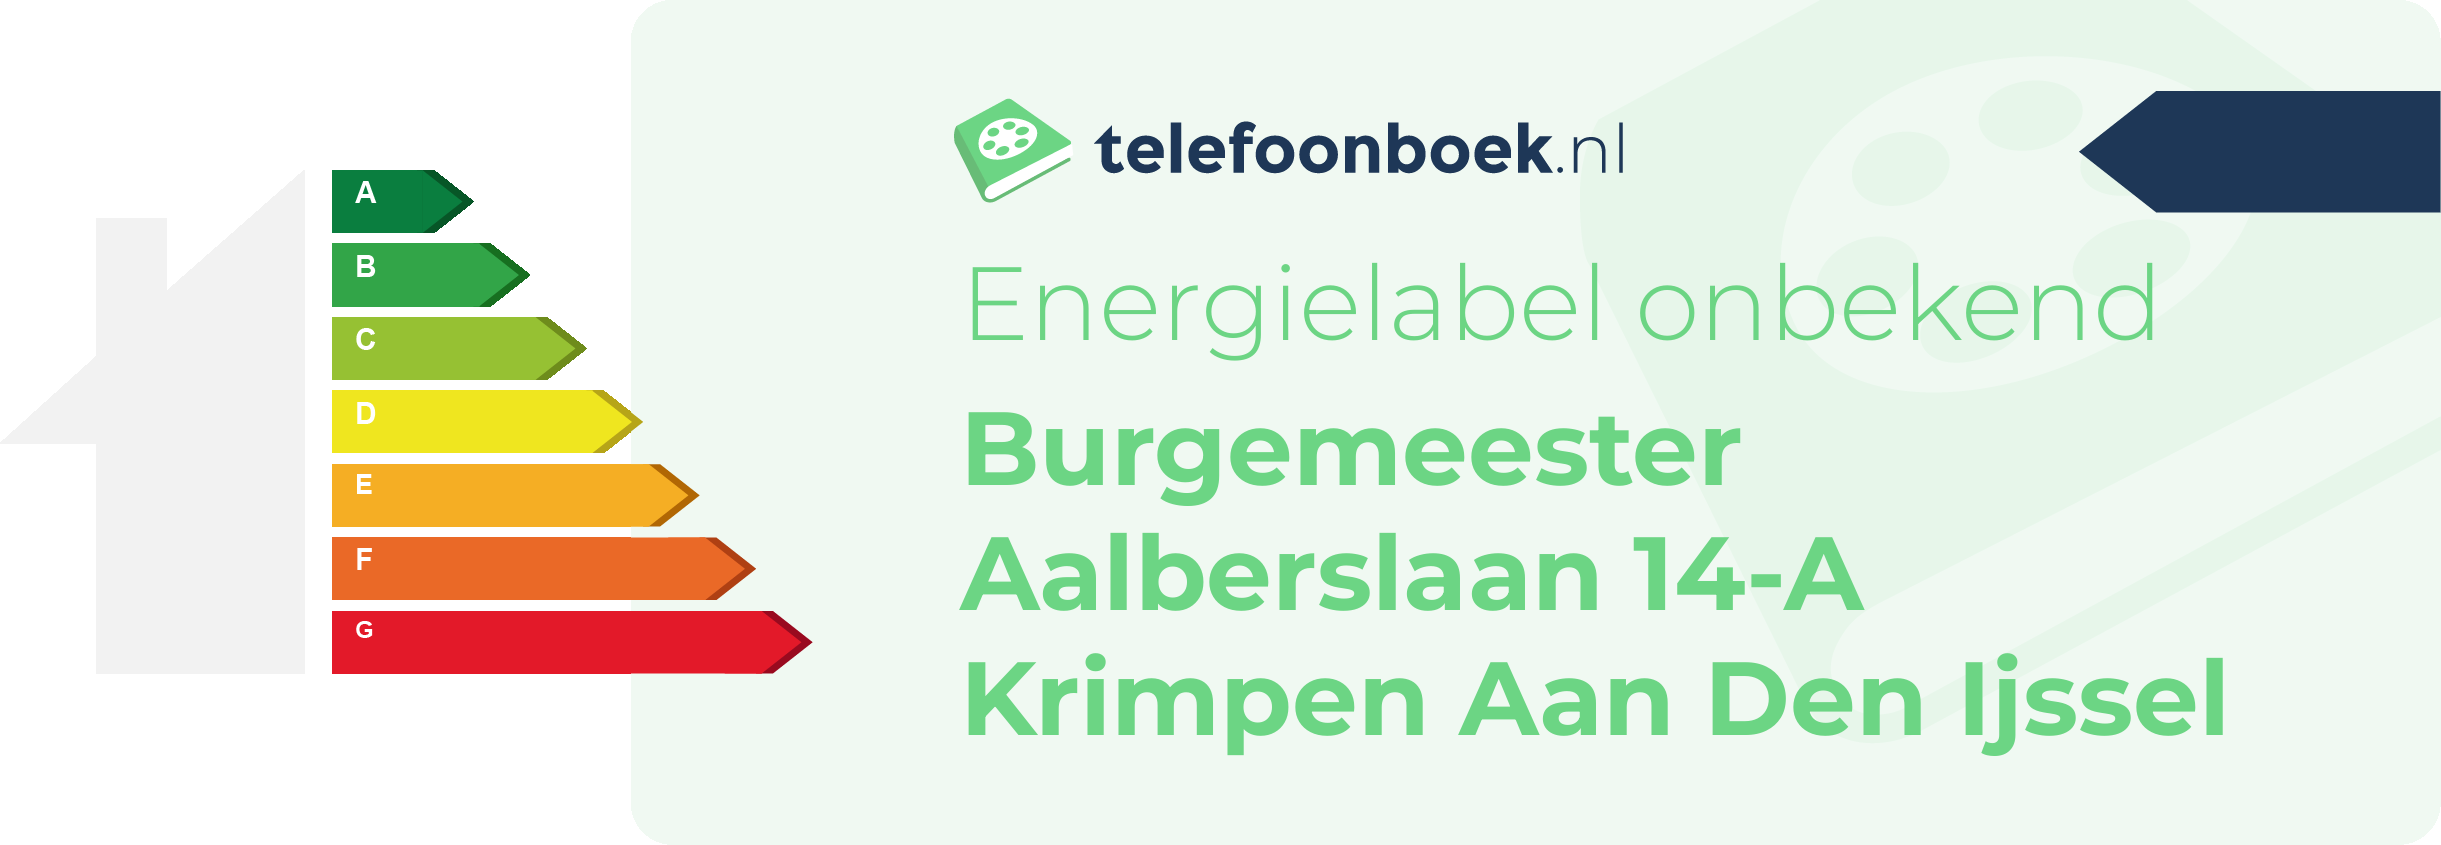 Energielabel Burgemeester Aalberslaan 14-A Krimpen Aan Den Ijssel